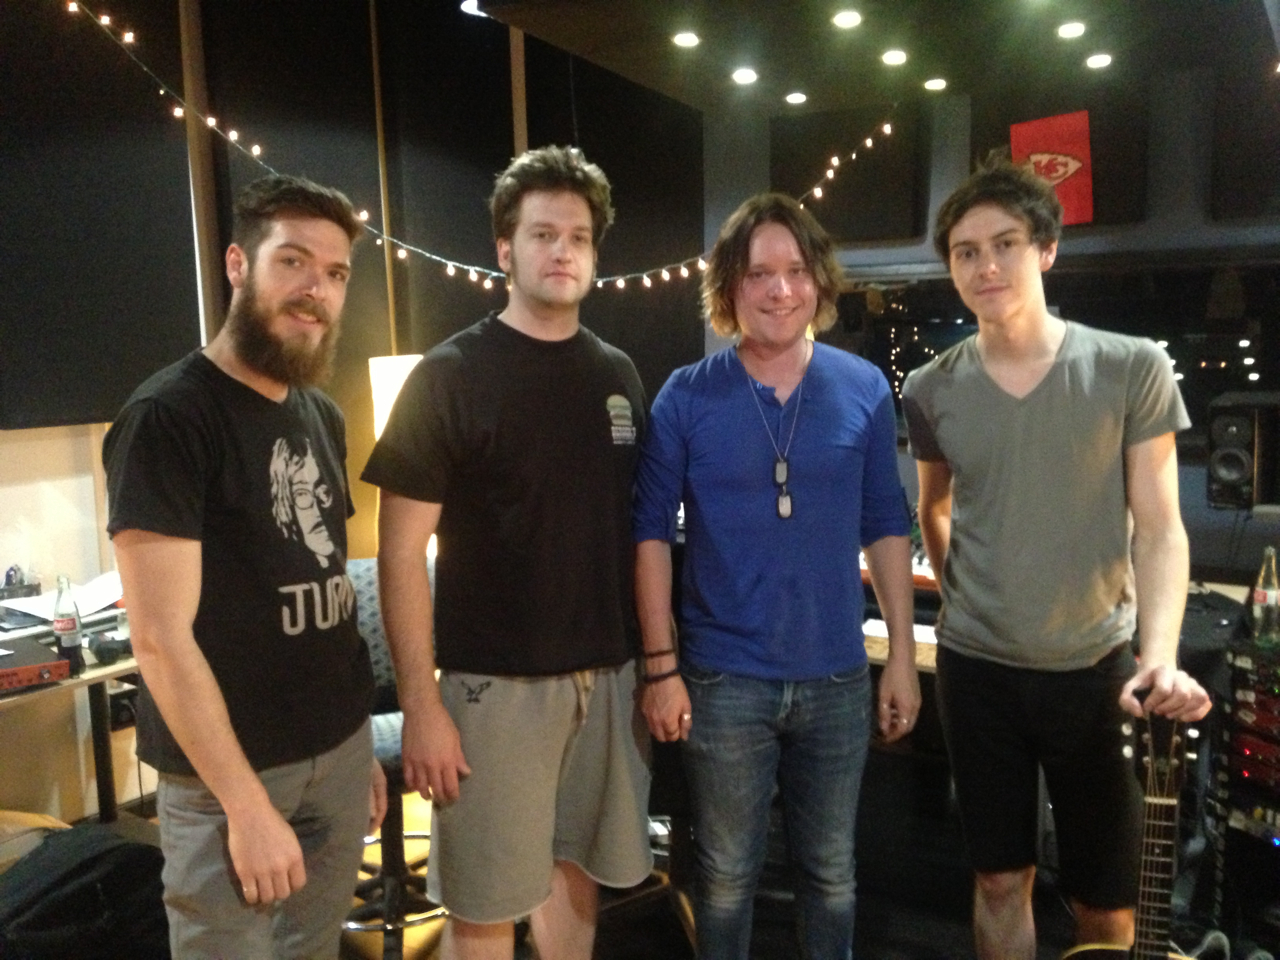 Ben, Kurt, Lucas, and Steve